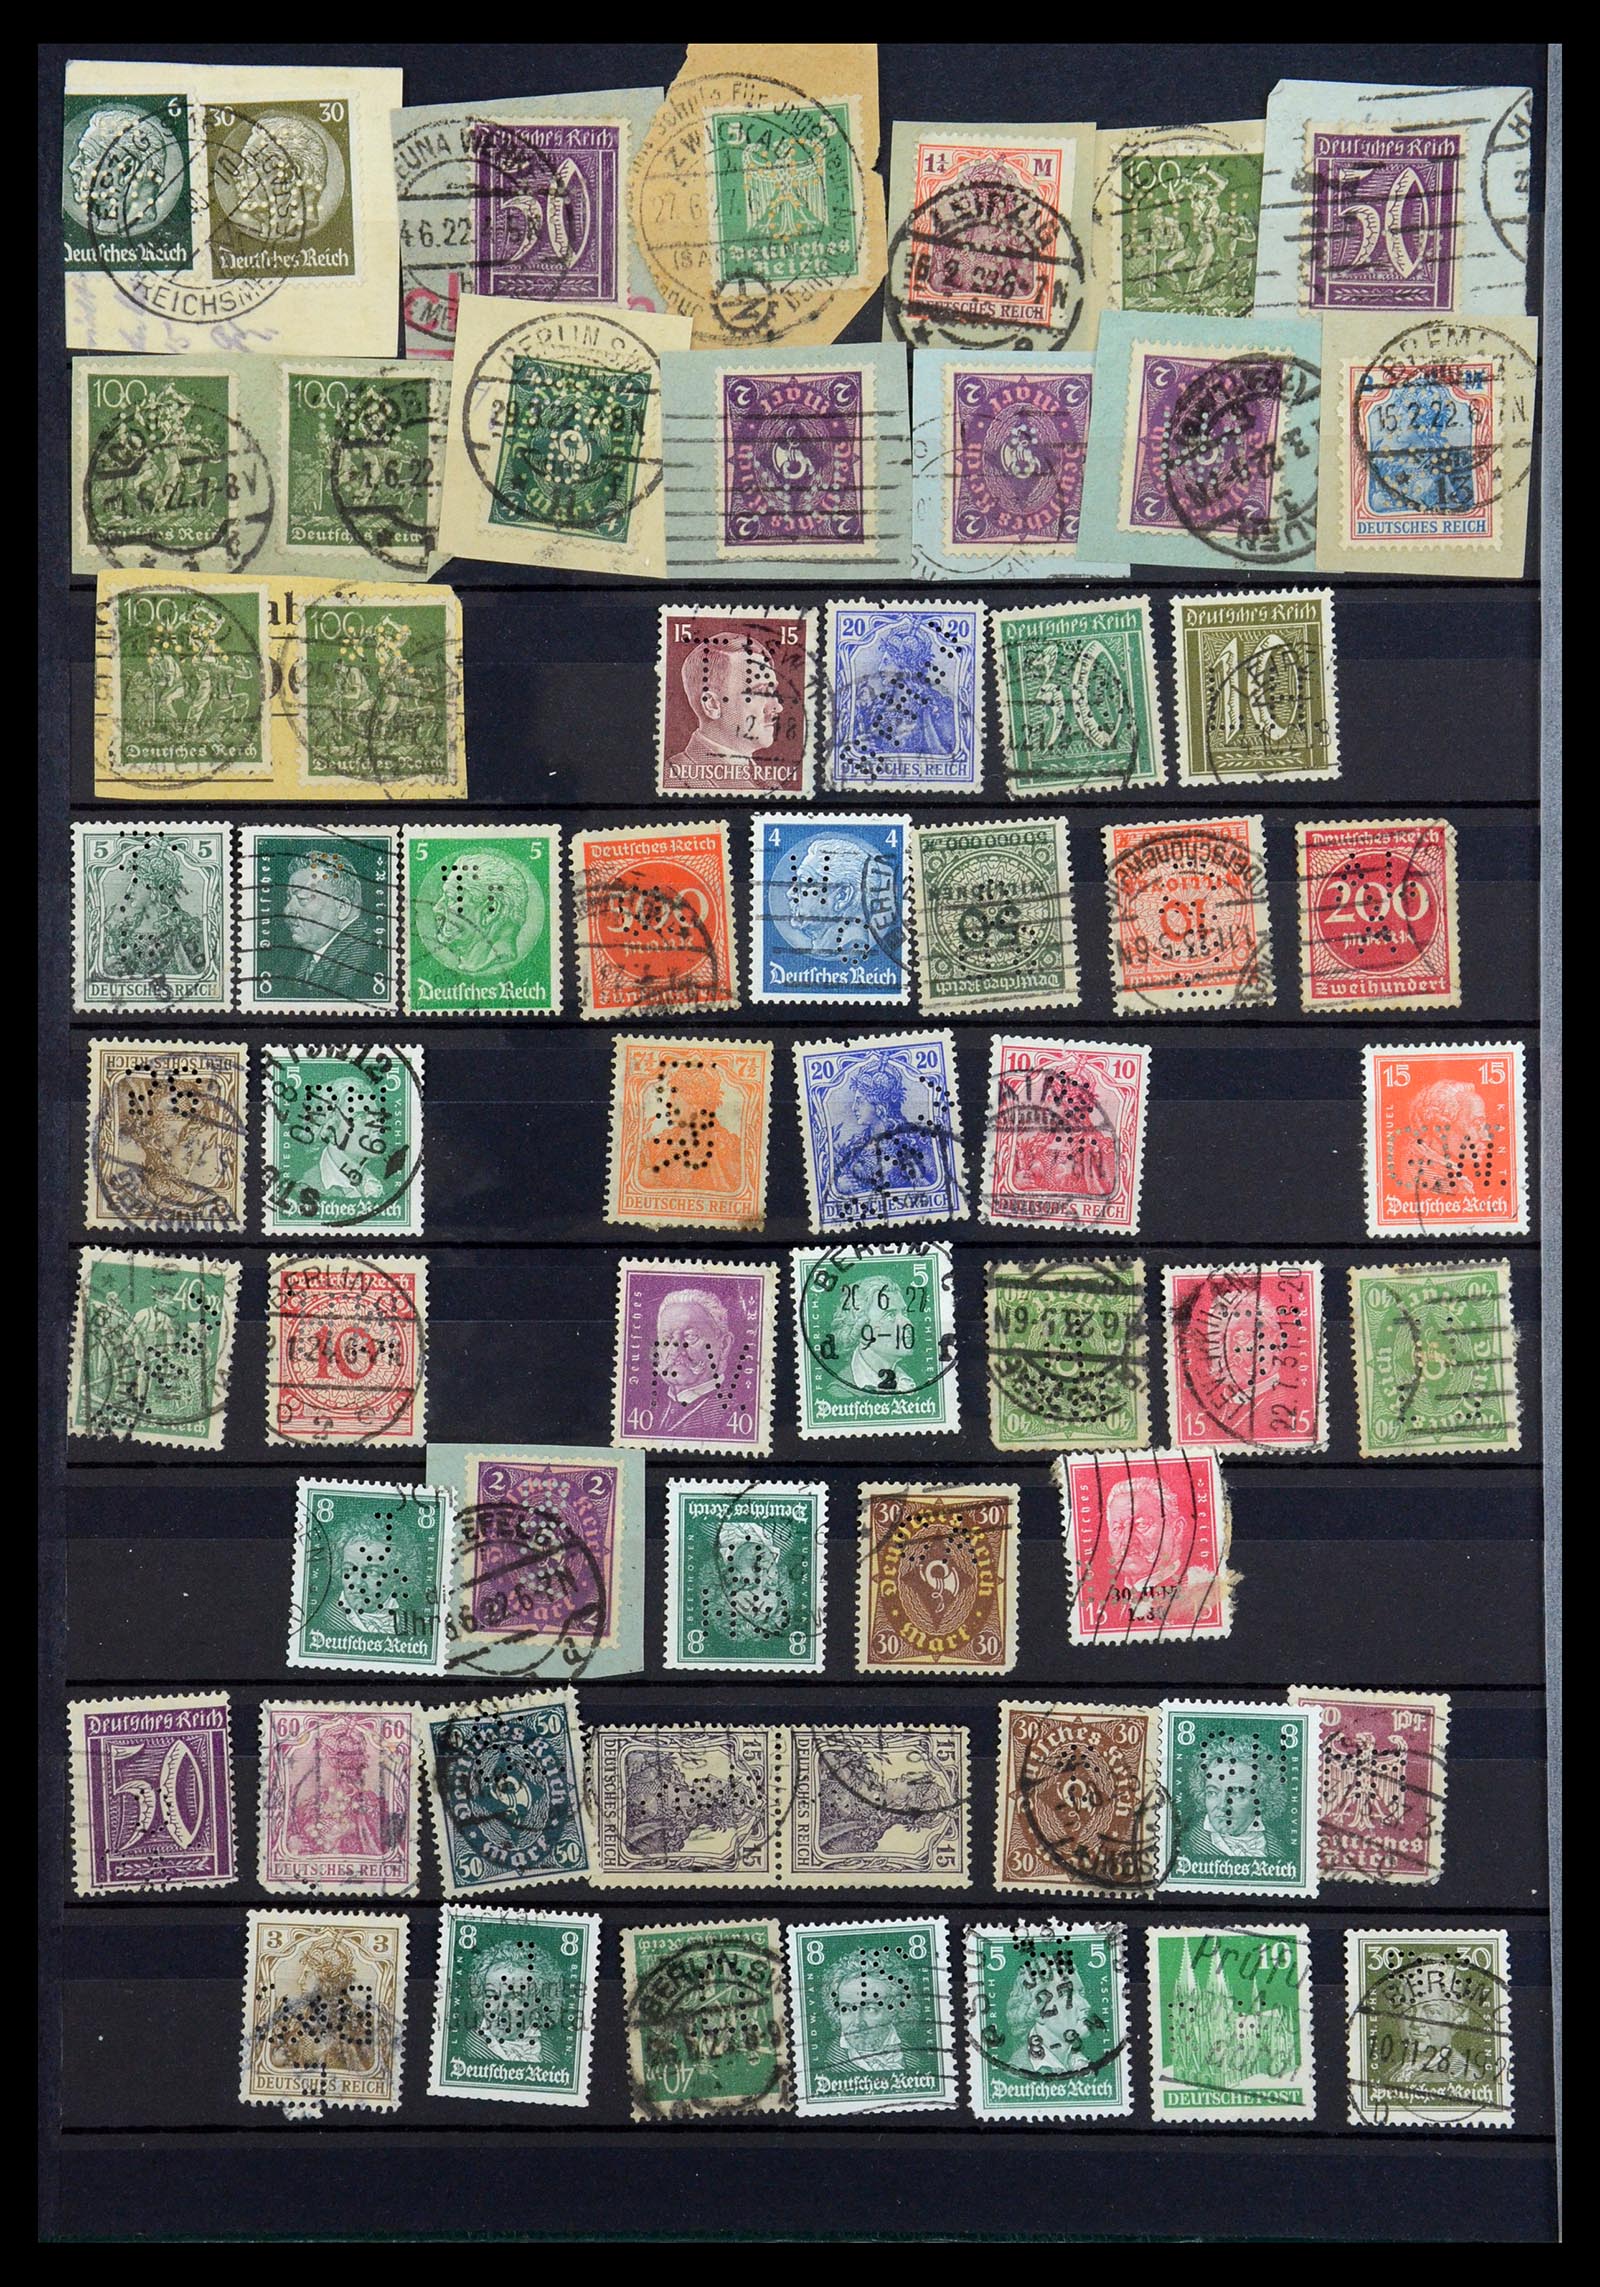 35183 010 - Stamp Collection 35183 German Reich perfins 1880-1945.